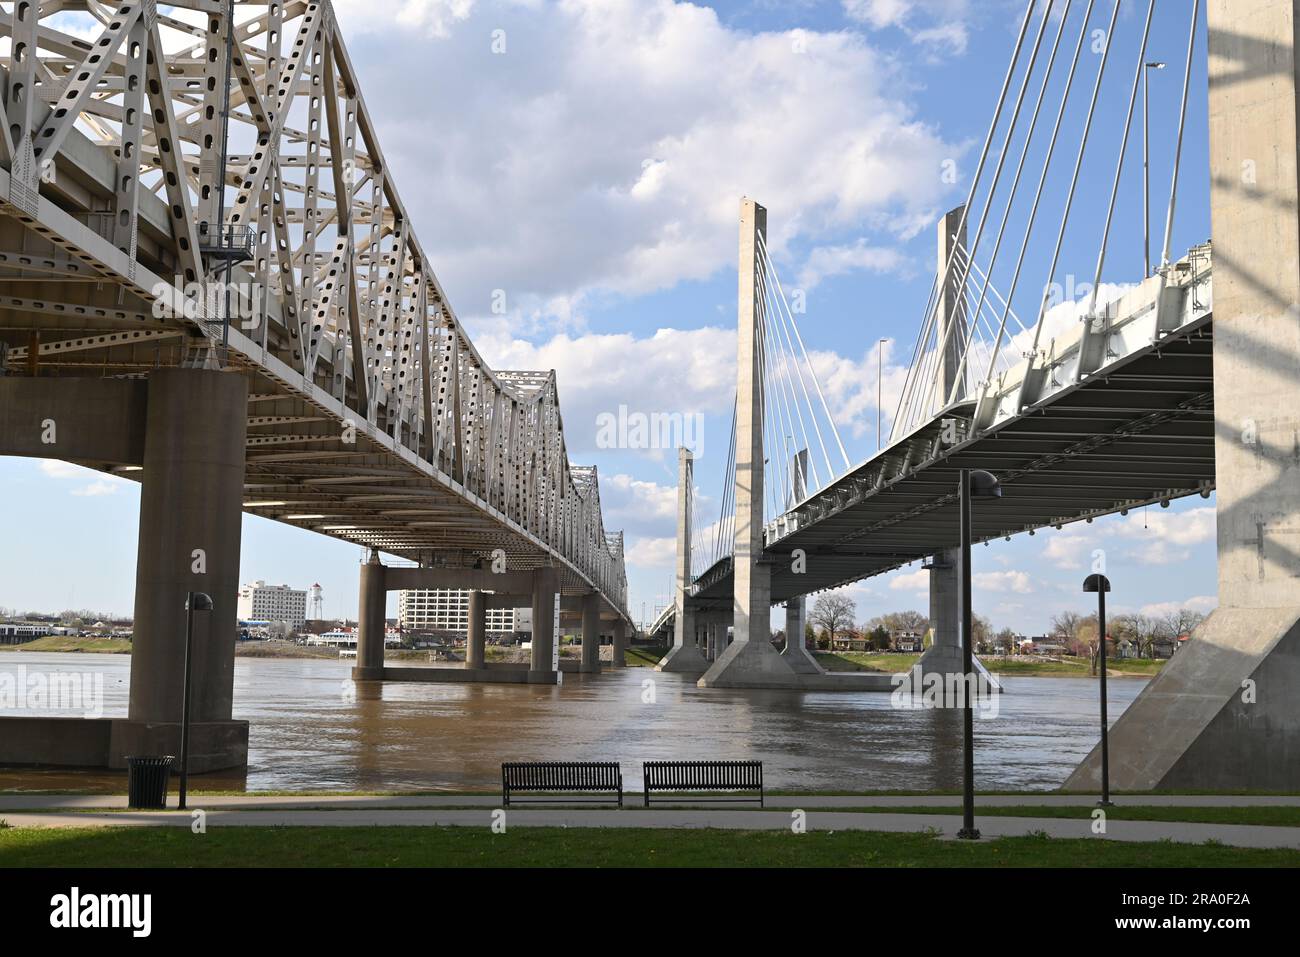 Foto simmetrica dal Waterfront Park in una splendida giornata estiva di sole, di due ponti che collegano Louisville, Kentucky e Jeffersonville, Indiana. Foto Stock